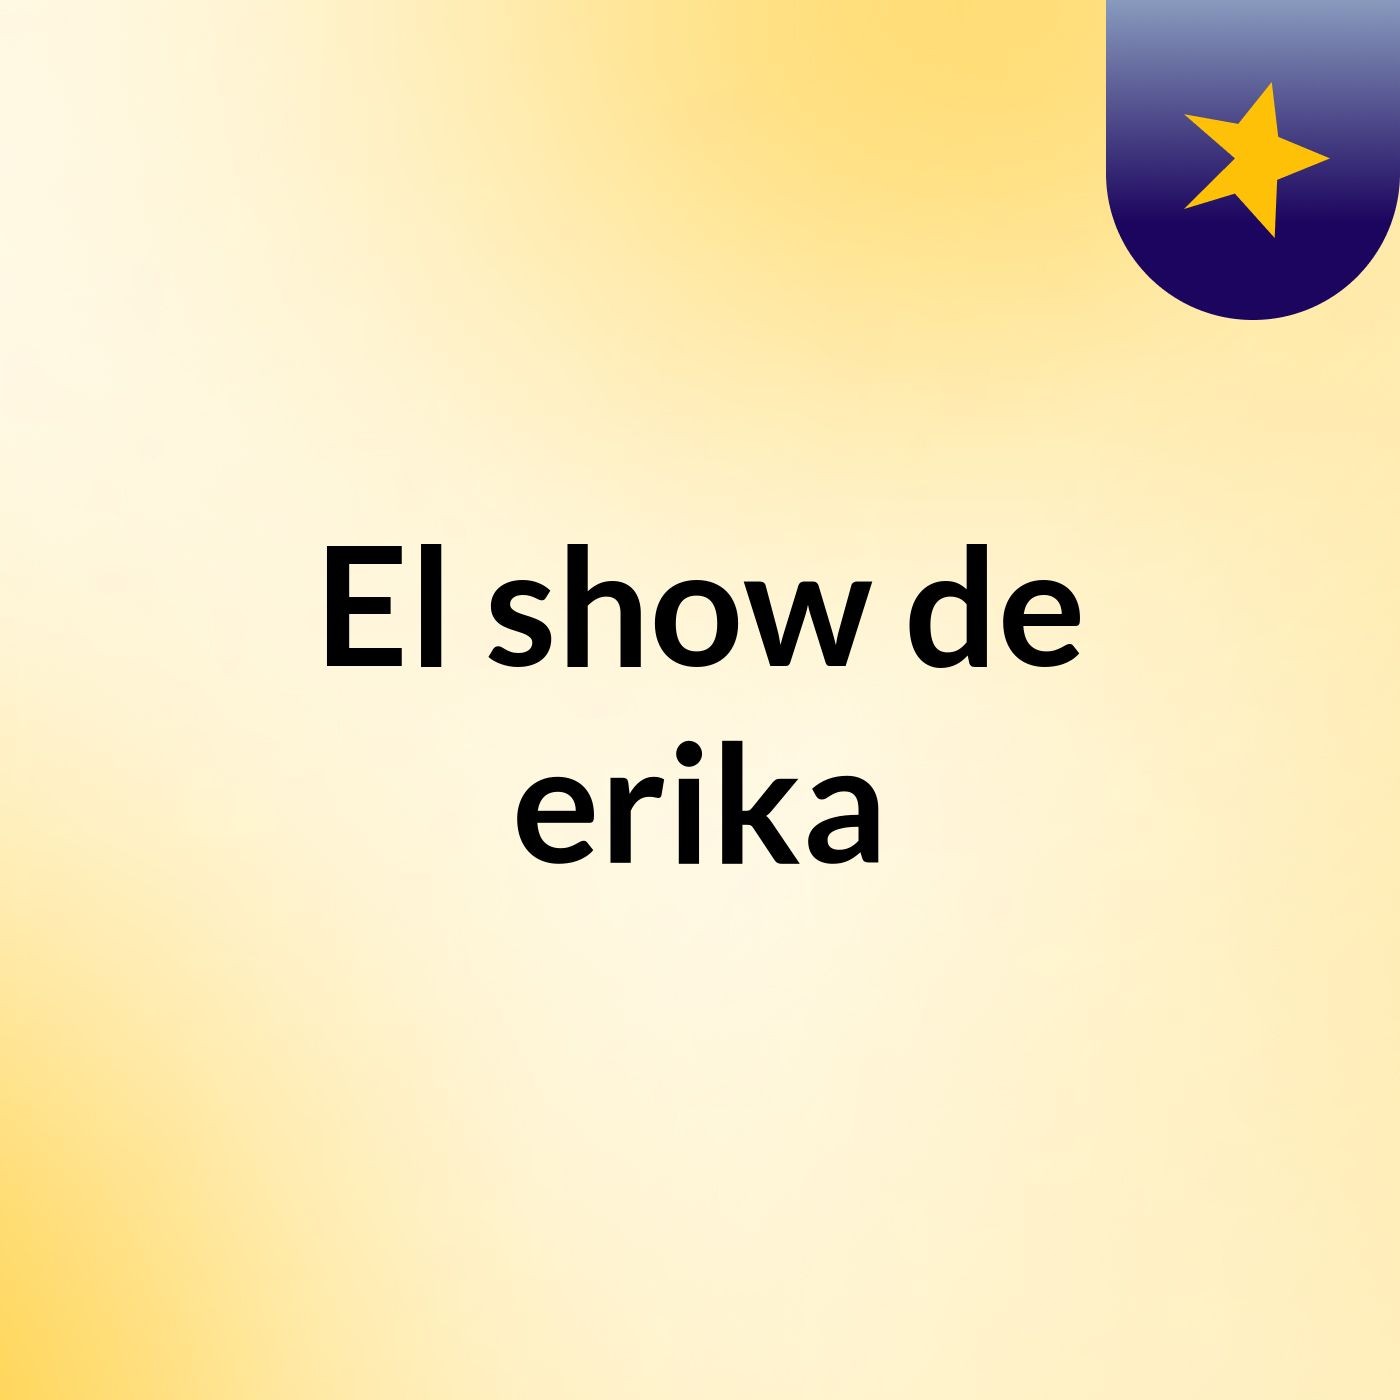 El show de erika